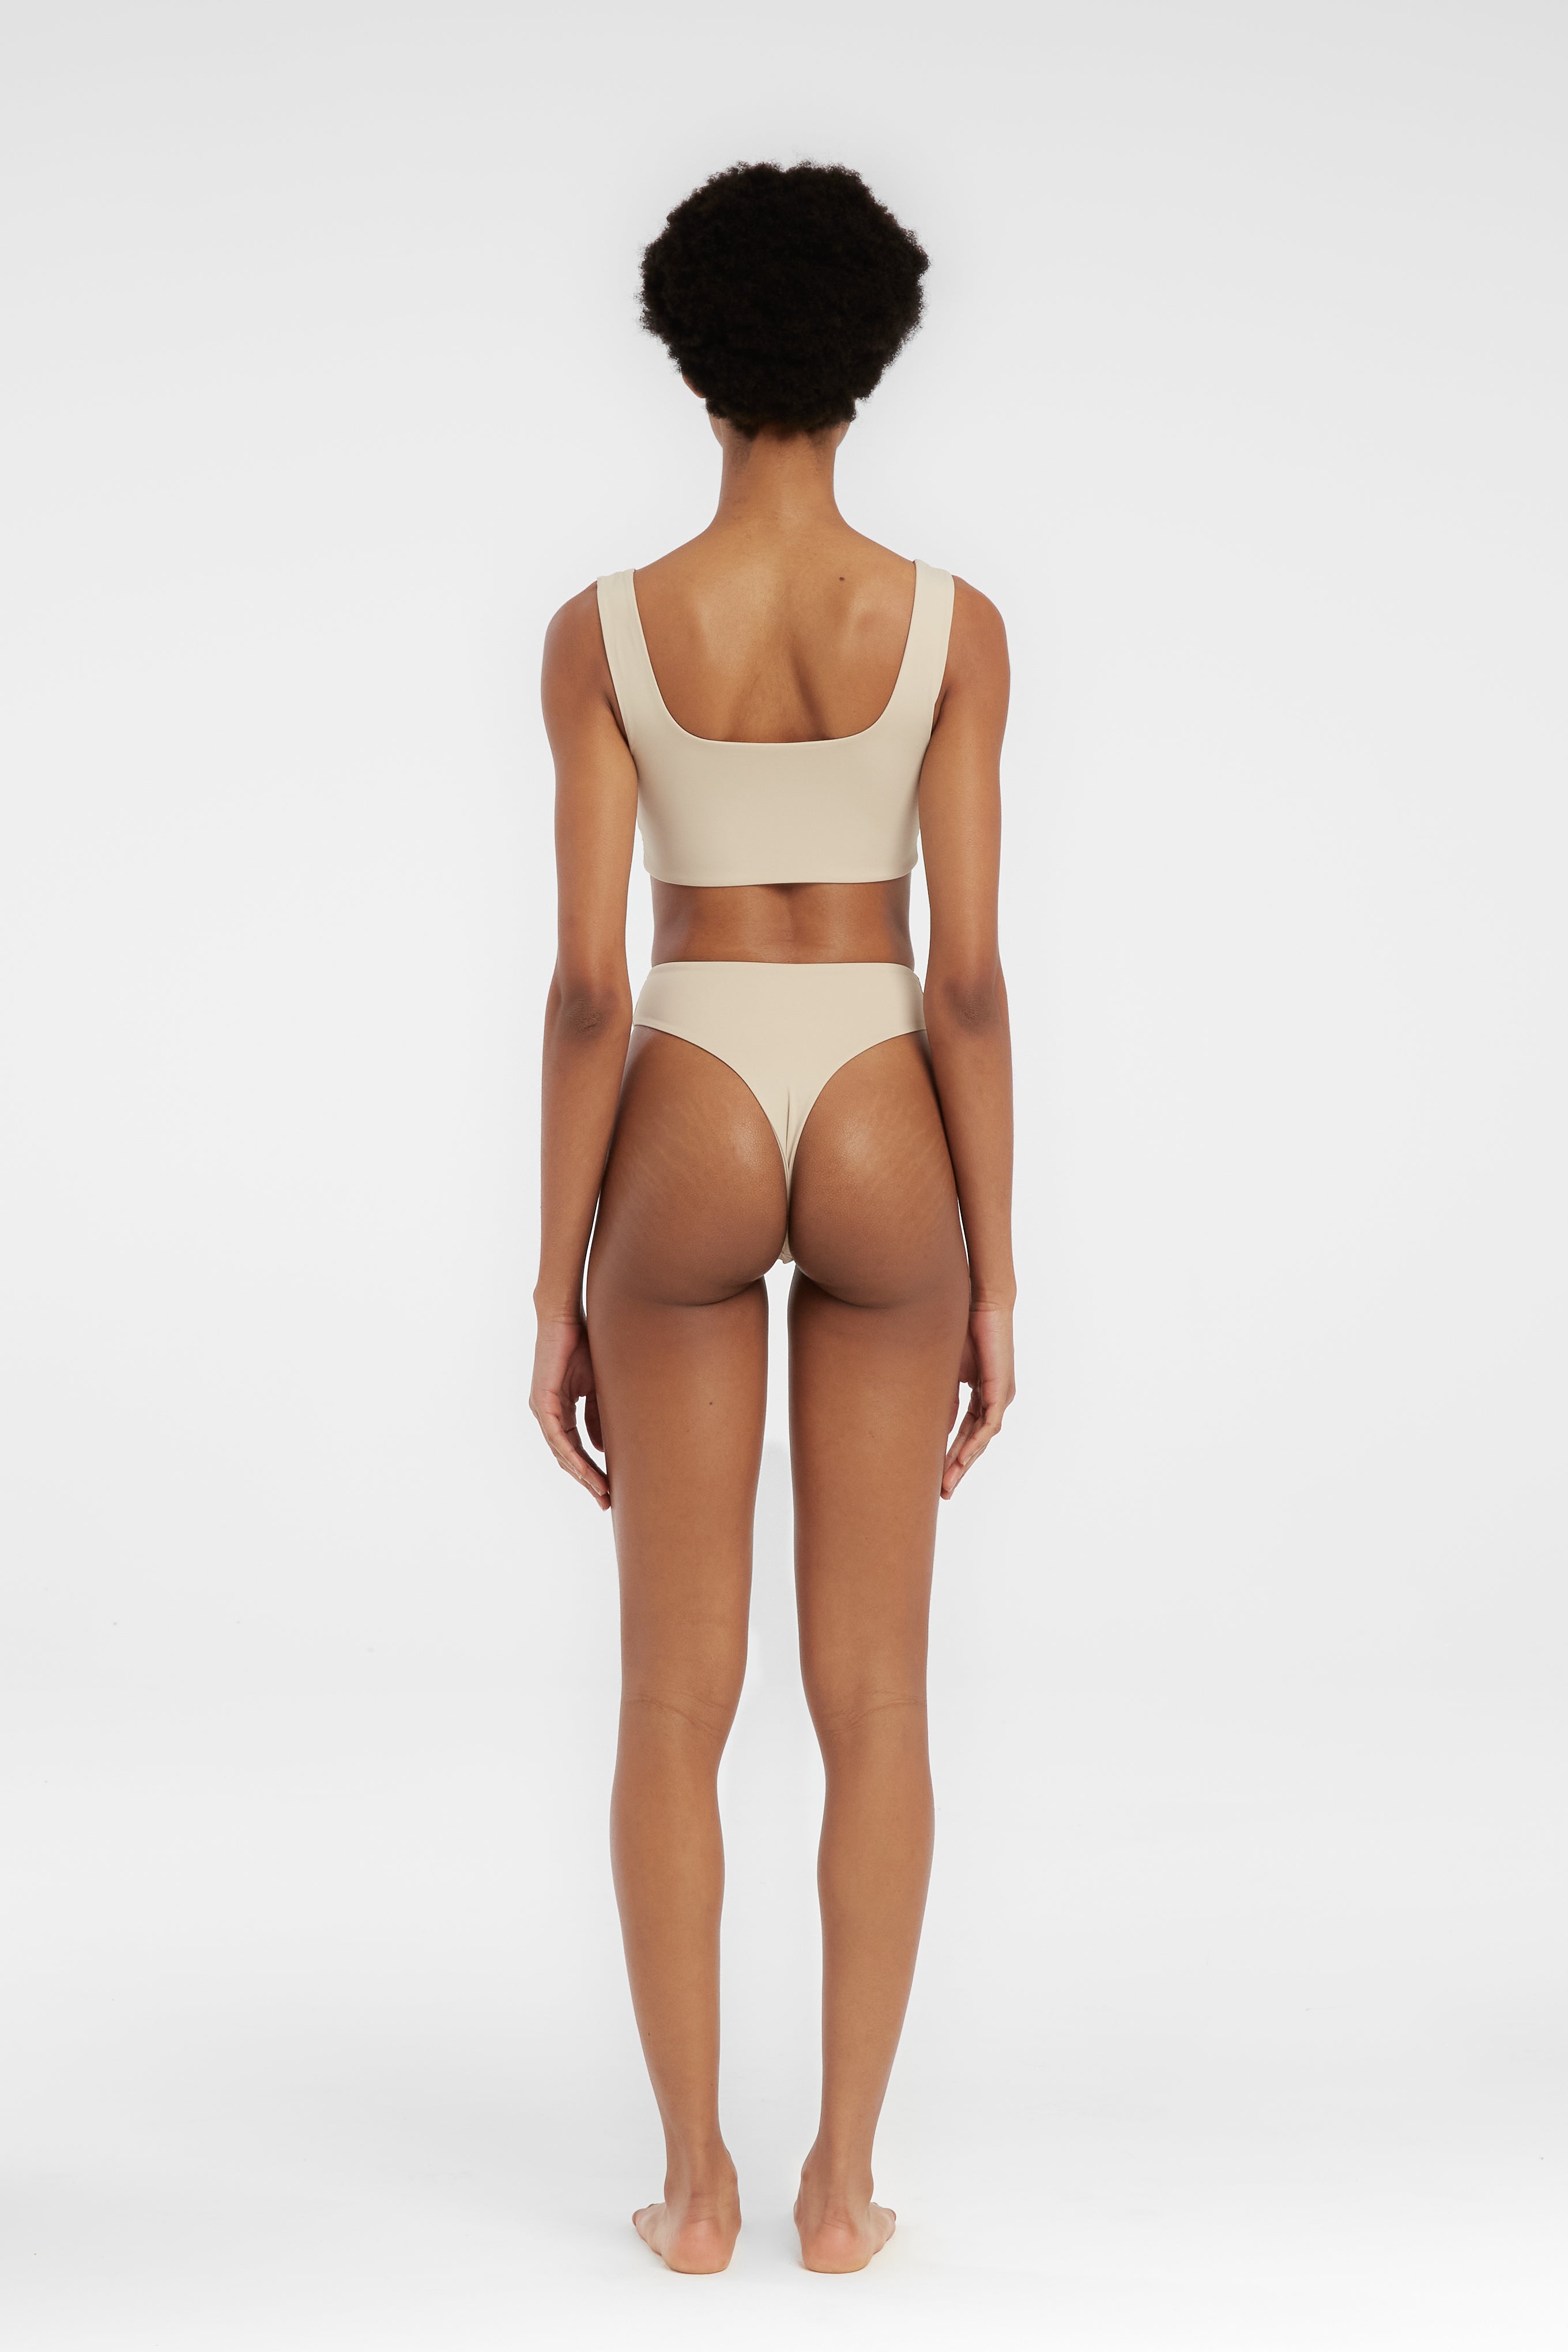 Aria Top-Coconut bikini top